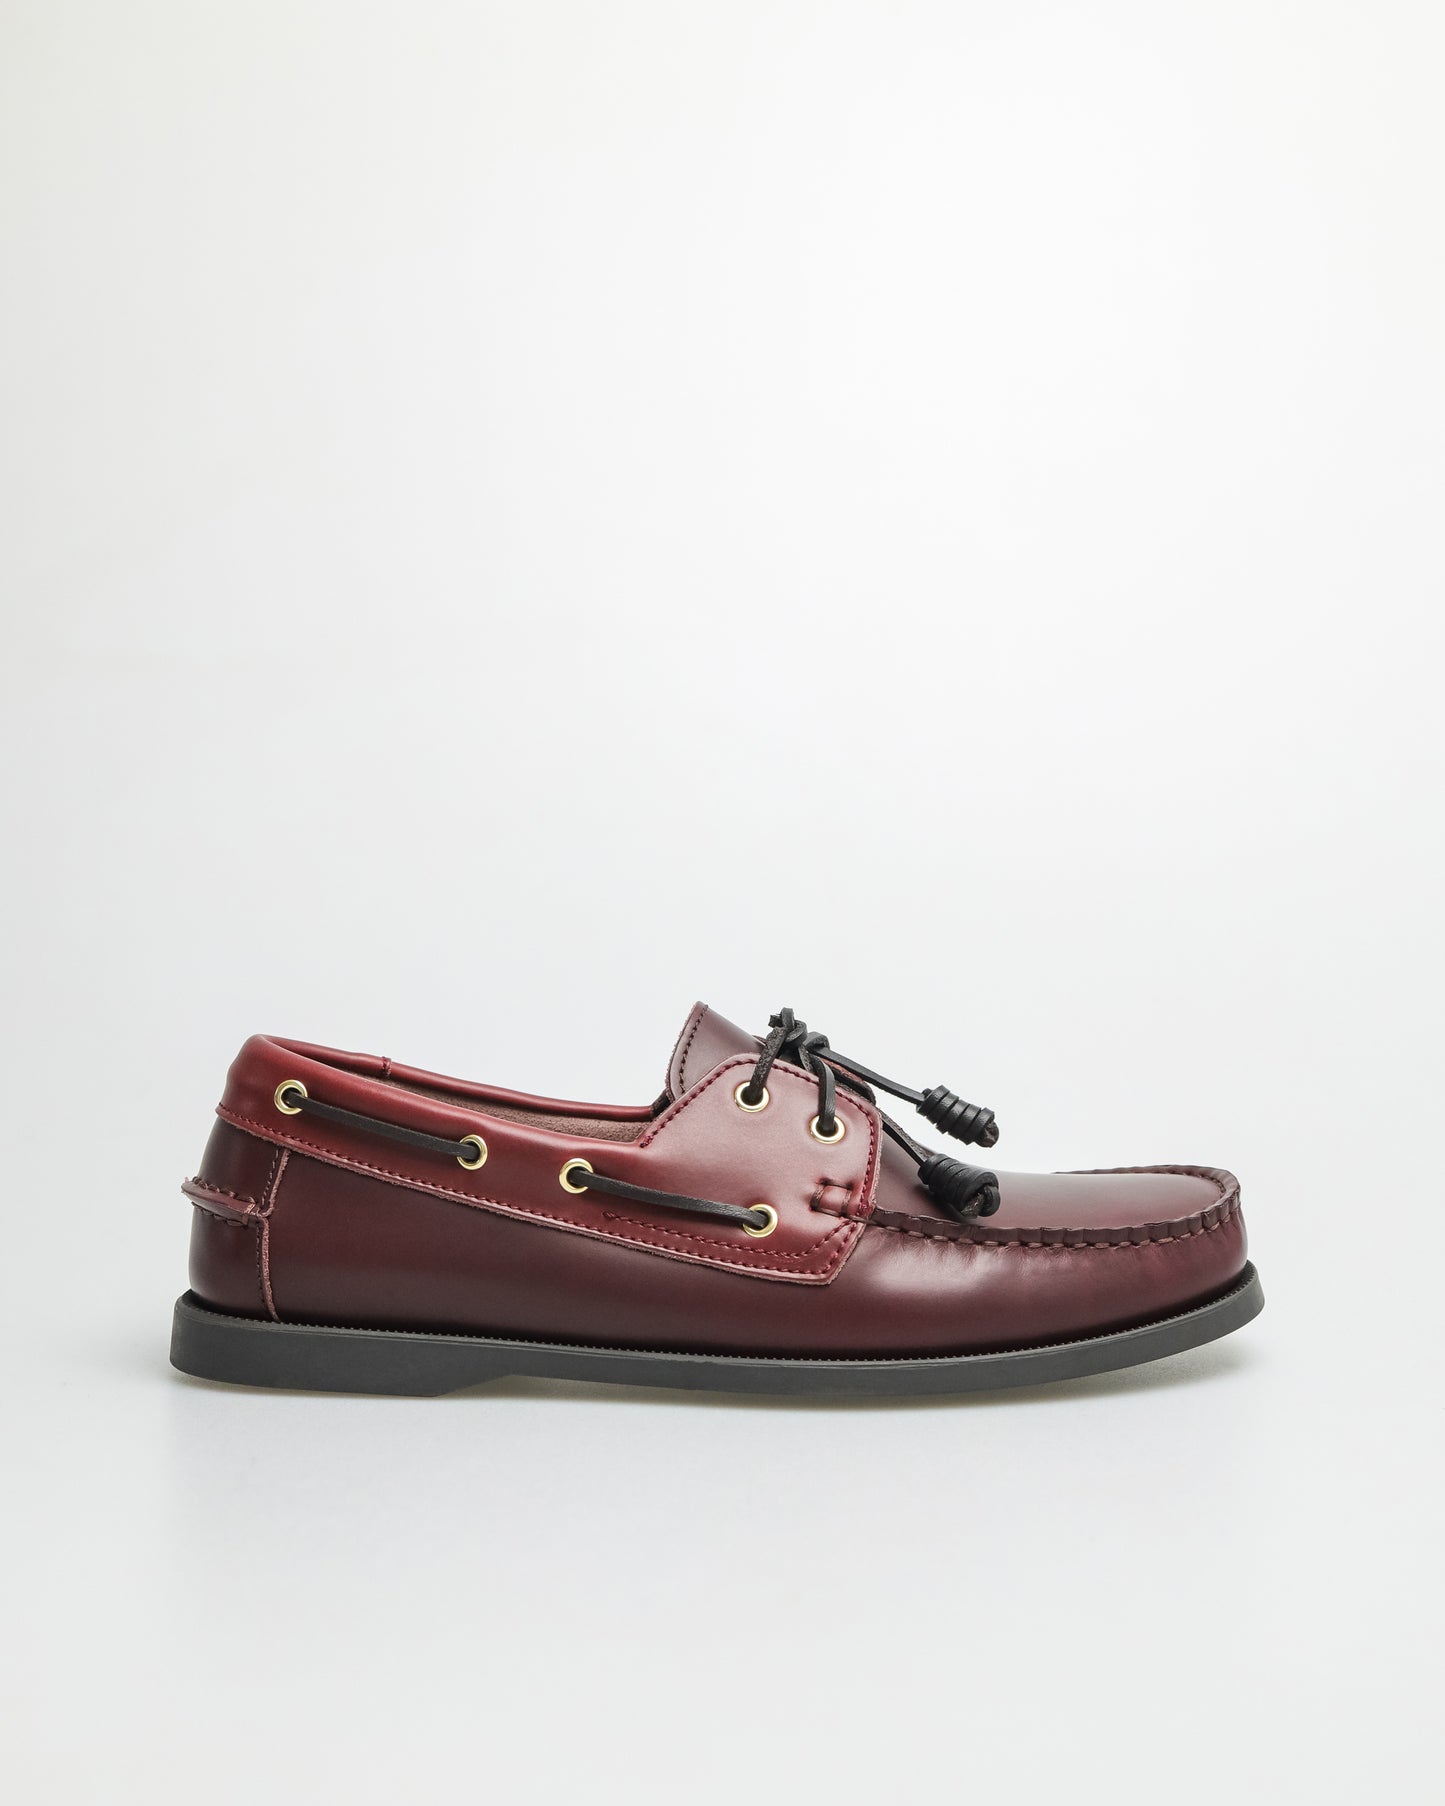 Tomaz C999A Men's Leather Boat Shoes (Wine)